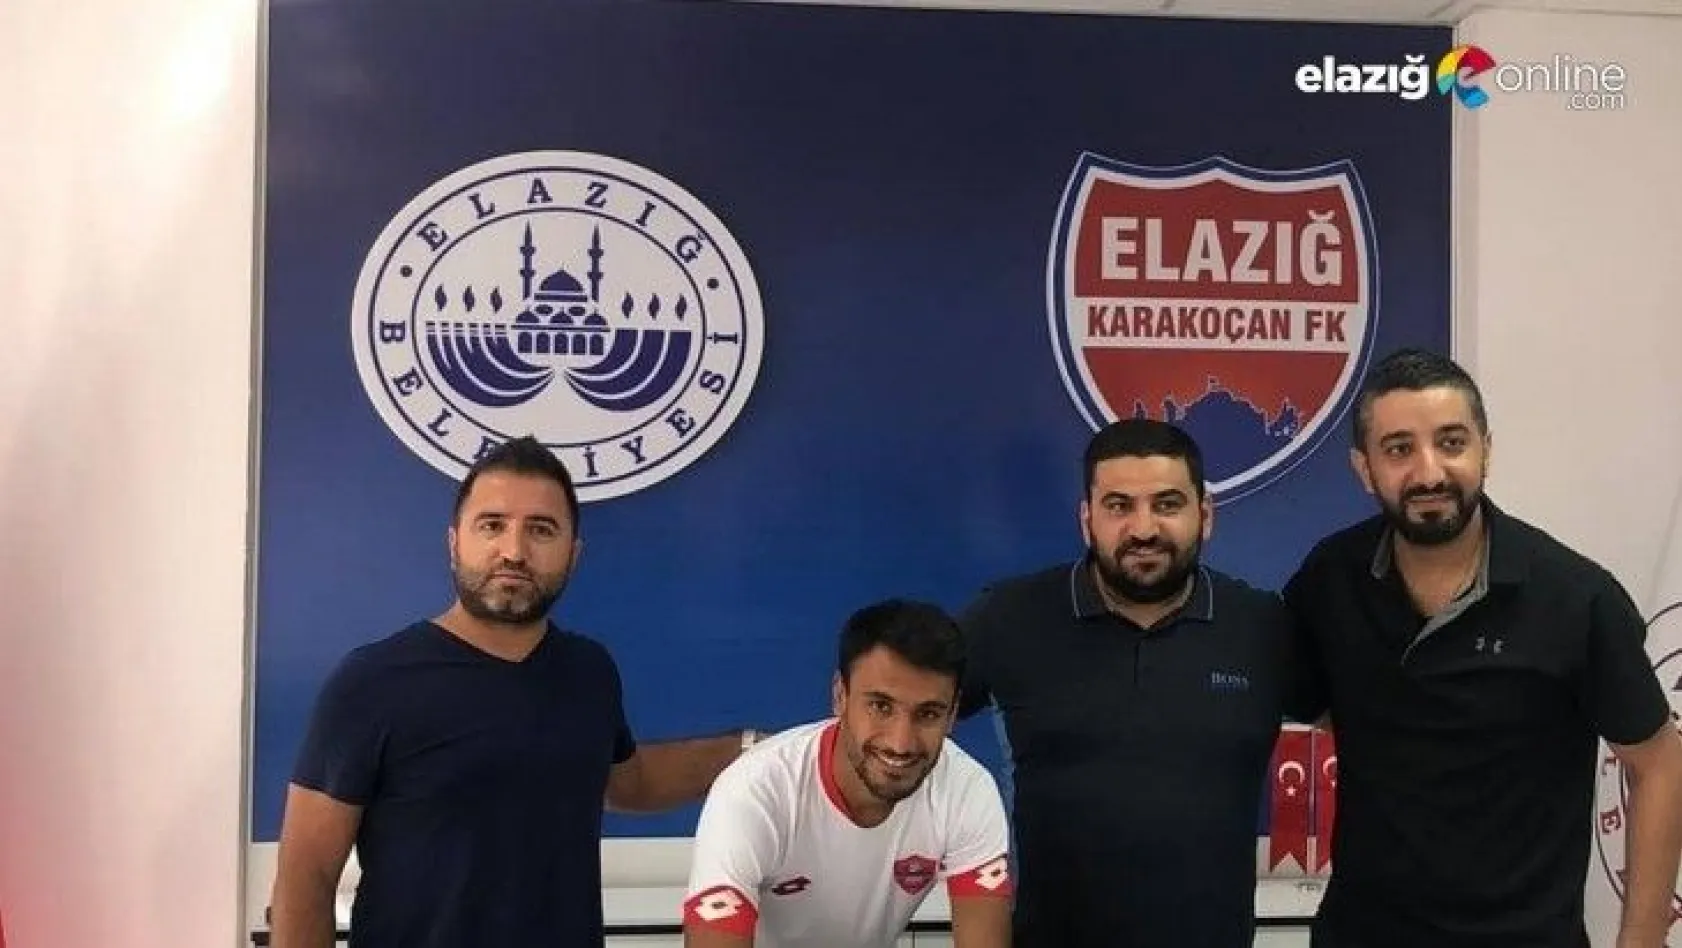 Elazığ Karakoçan FK, son günde 3 transfer yaptı